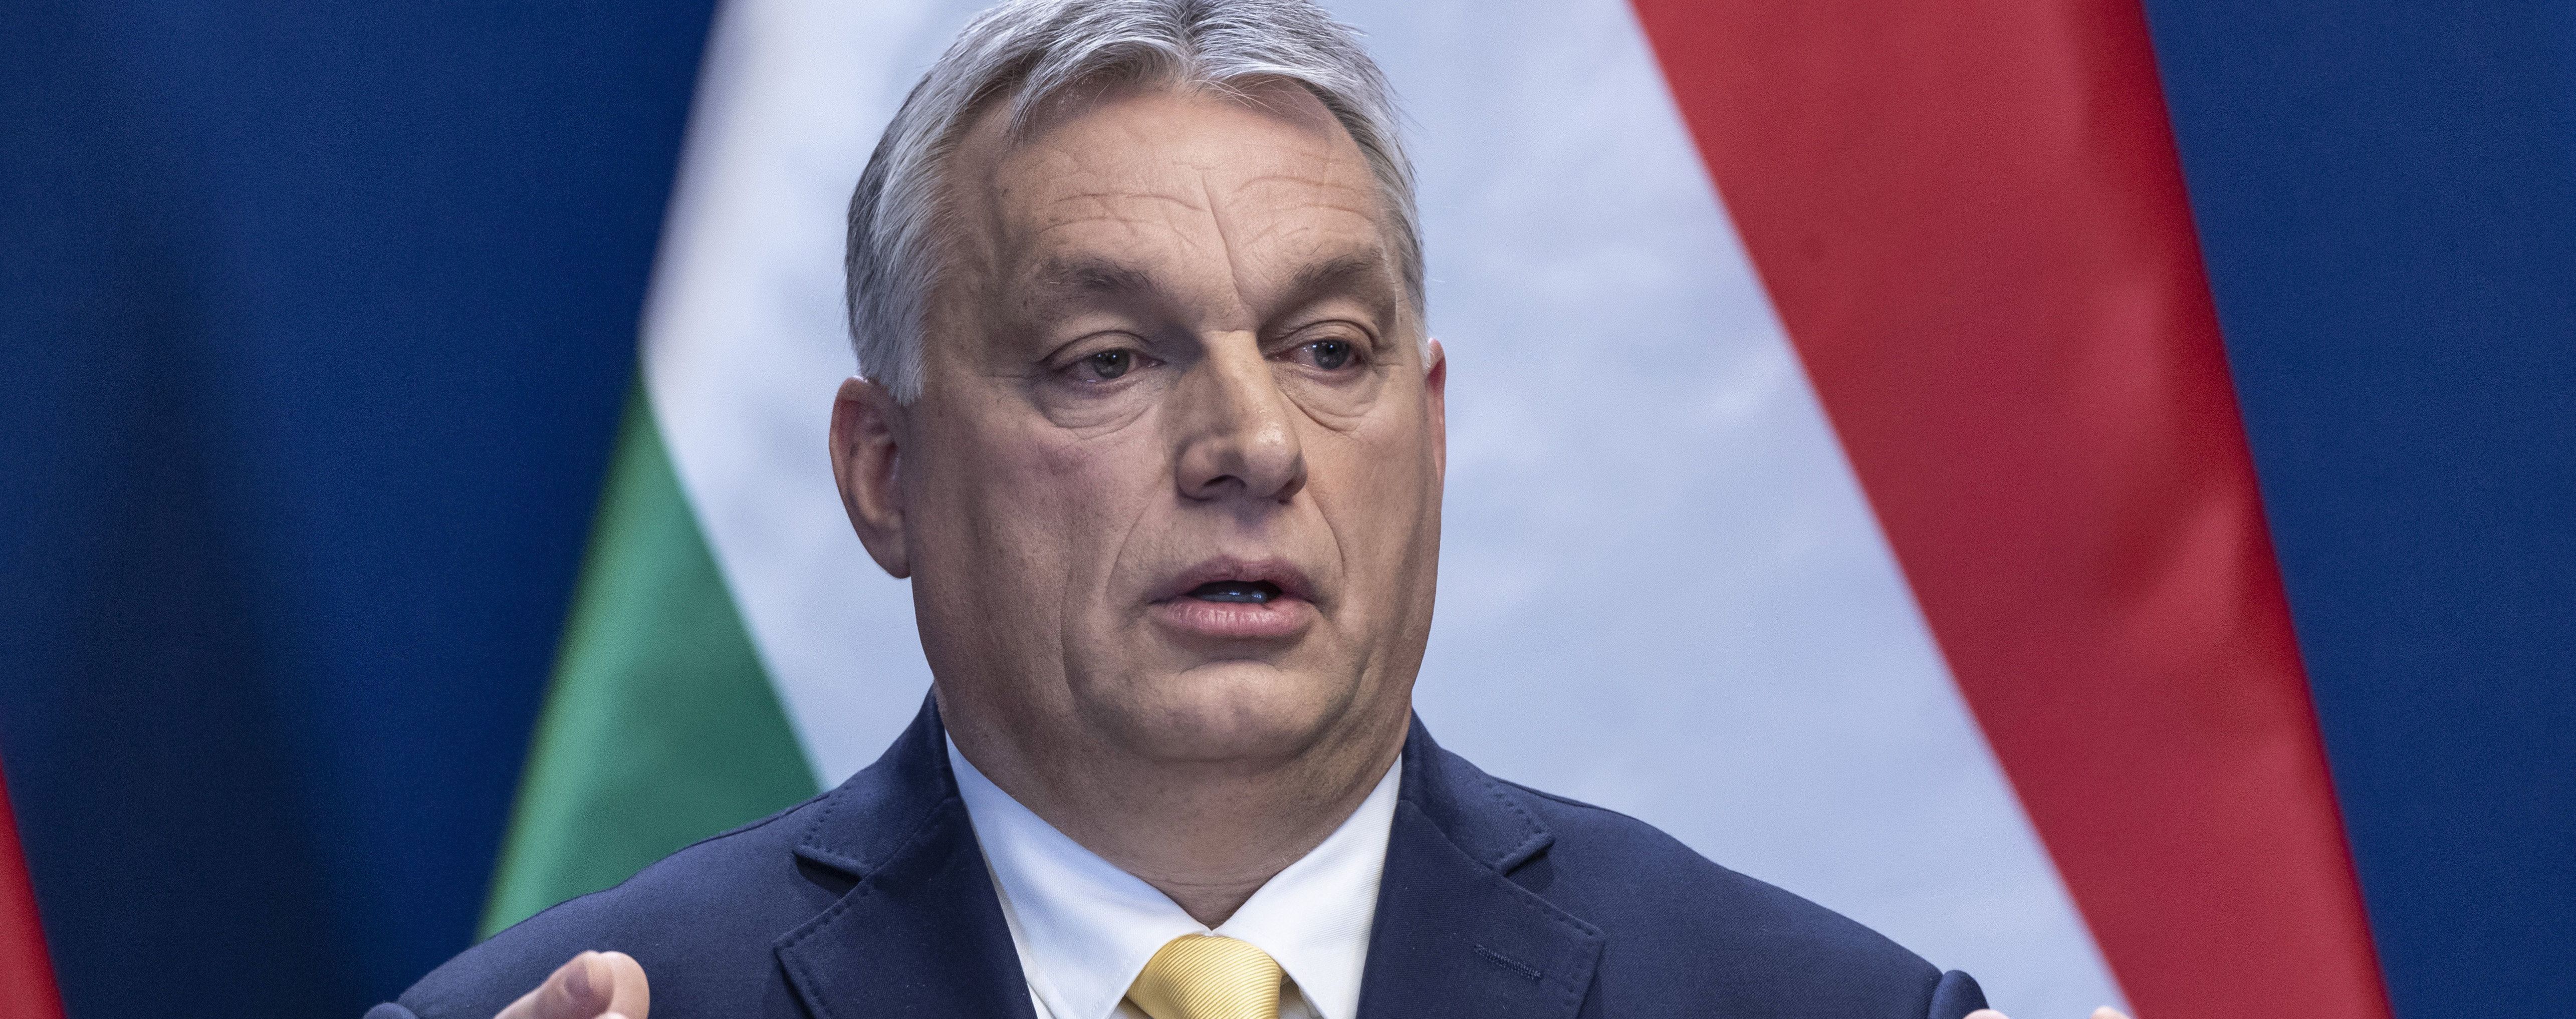 "Нашу цивилизацию нужно сохранить": Орбан оправдался за свои слова о "смешывании рас"